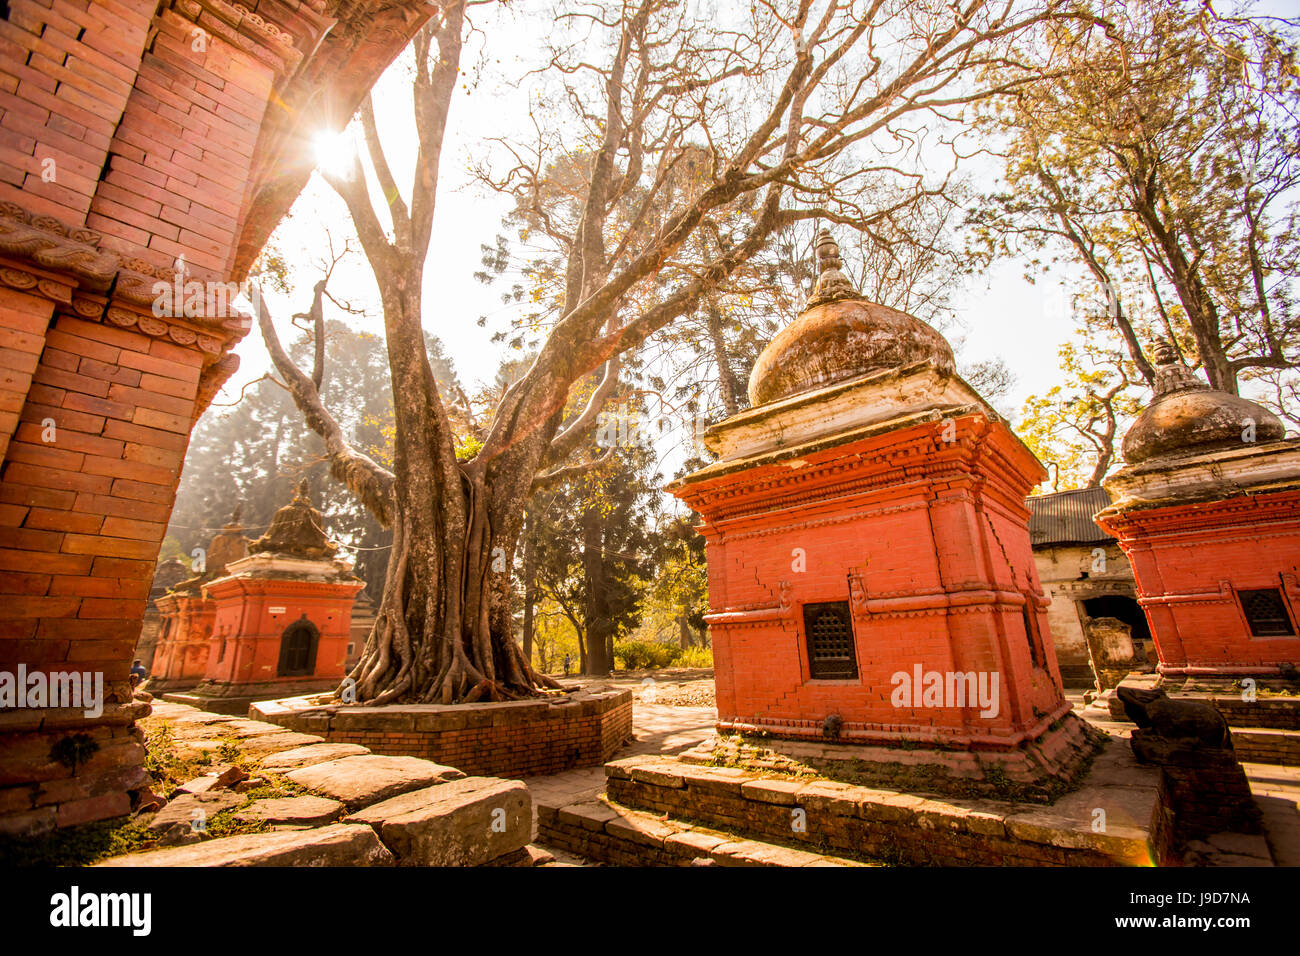 Pashupati Temple tombs, Kathmandu, Nepal, Asia Stock Photo